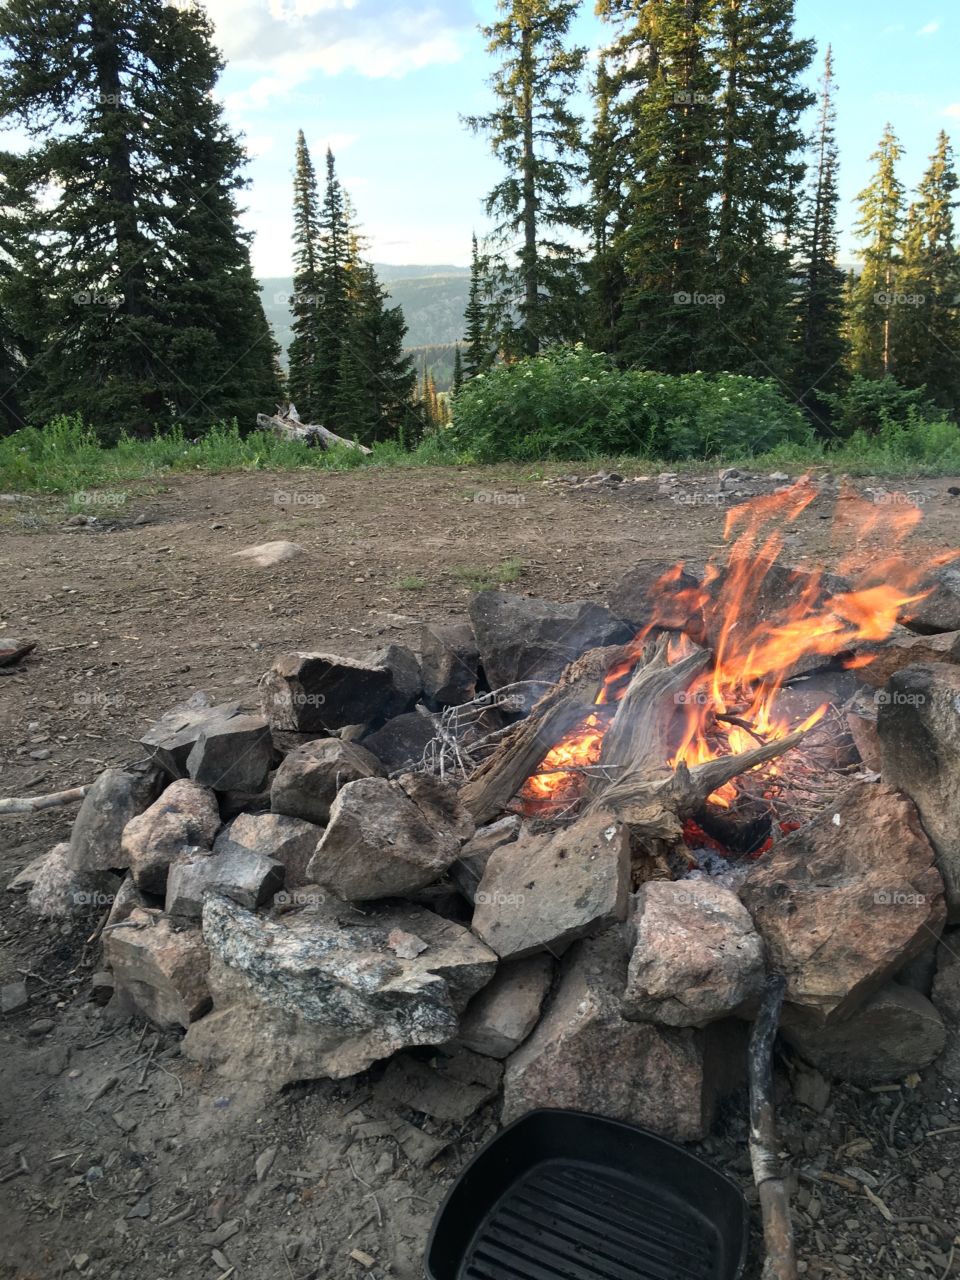 Campfire. Buffalo pass. Routt national forest. 